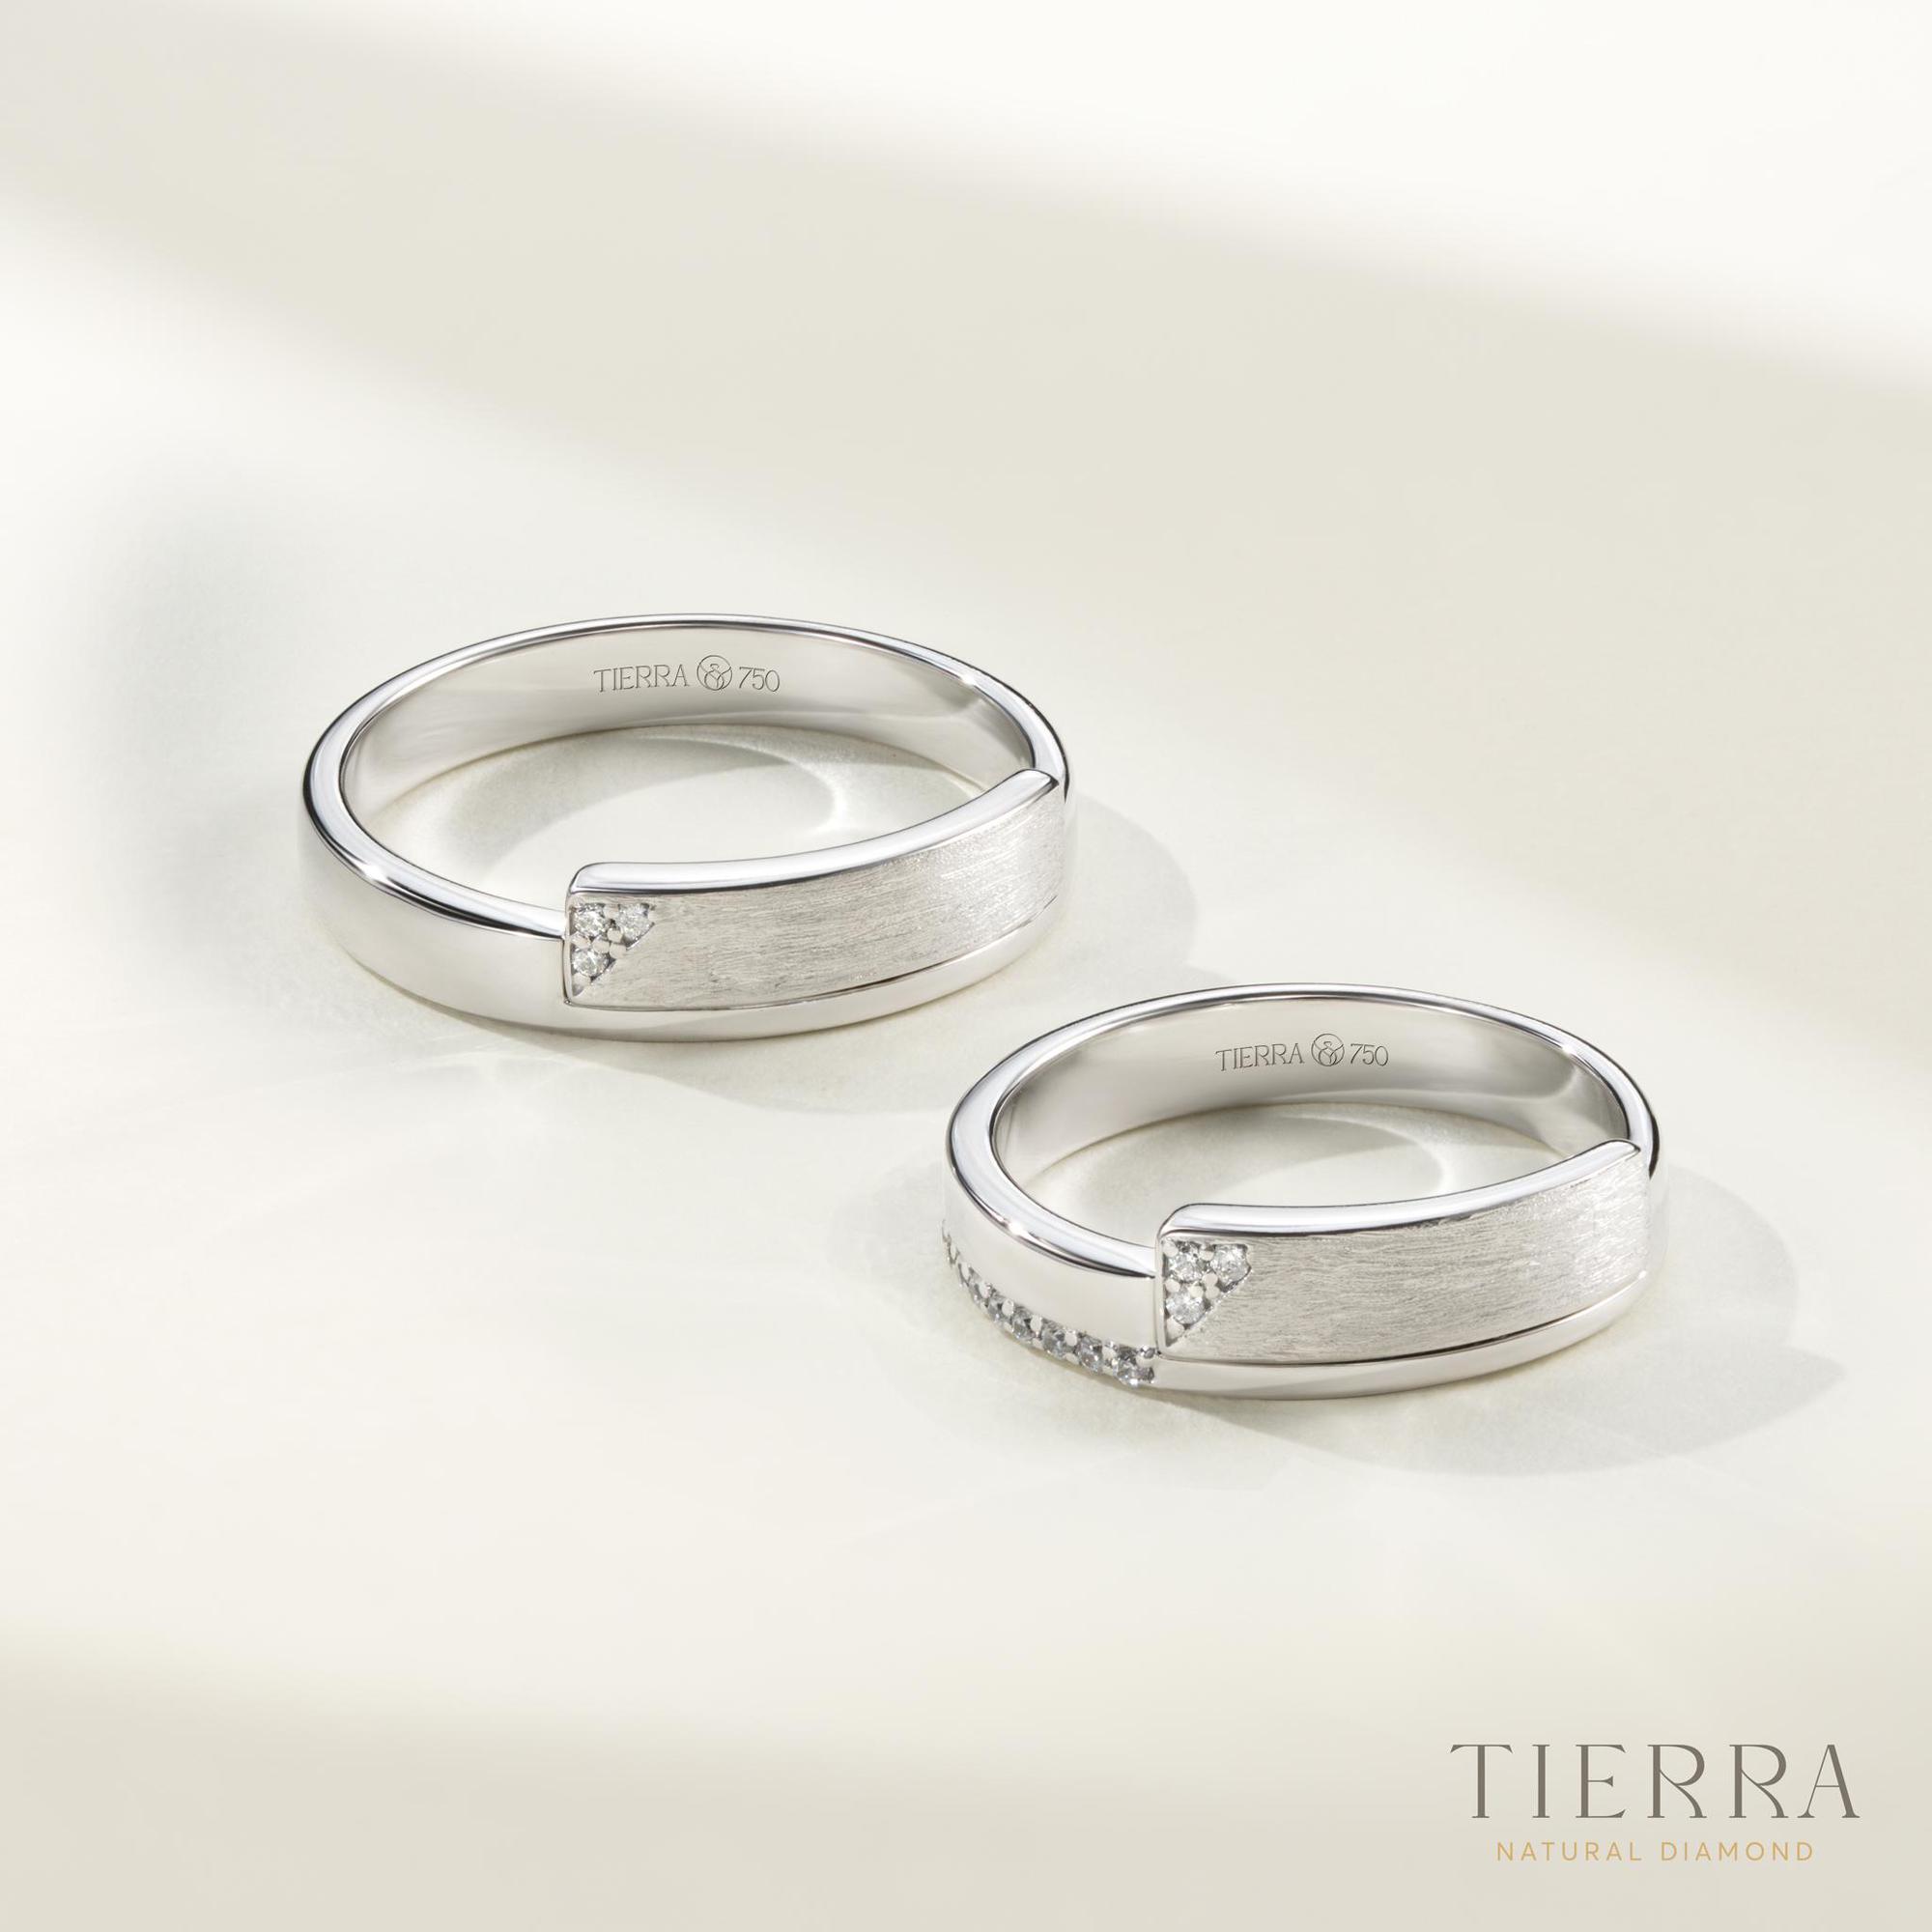 Nhẫn cưới Bạch Kim (Platinum) - lựa chọn hoàn hảo cho cặp đôi thanh lịch & tinh tế - Ảnh 1.